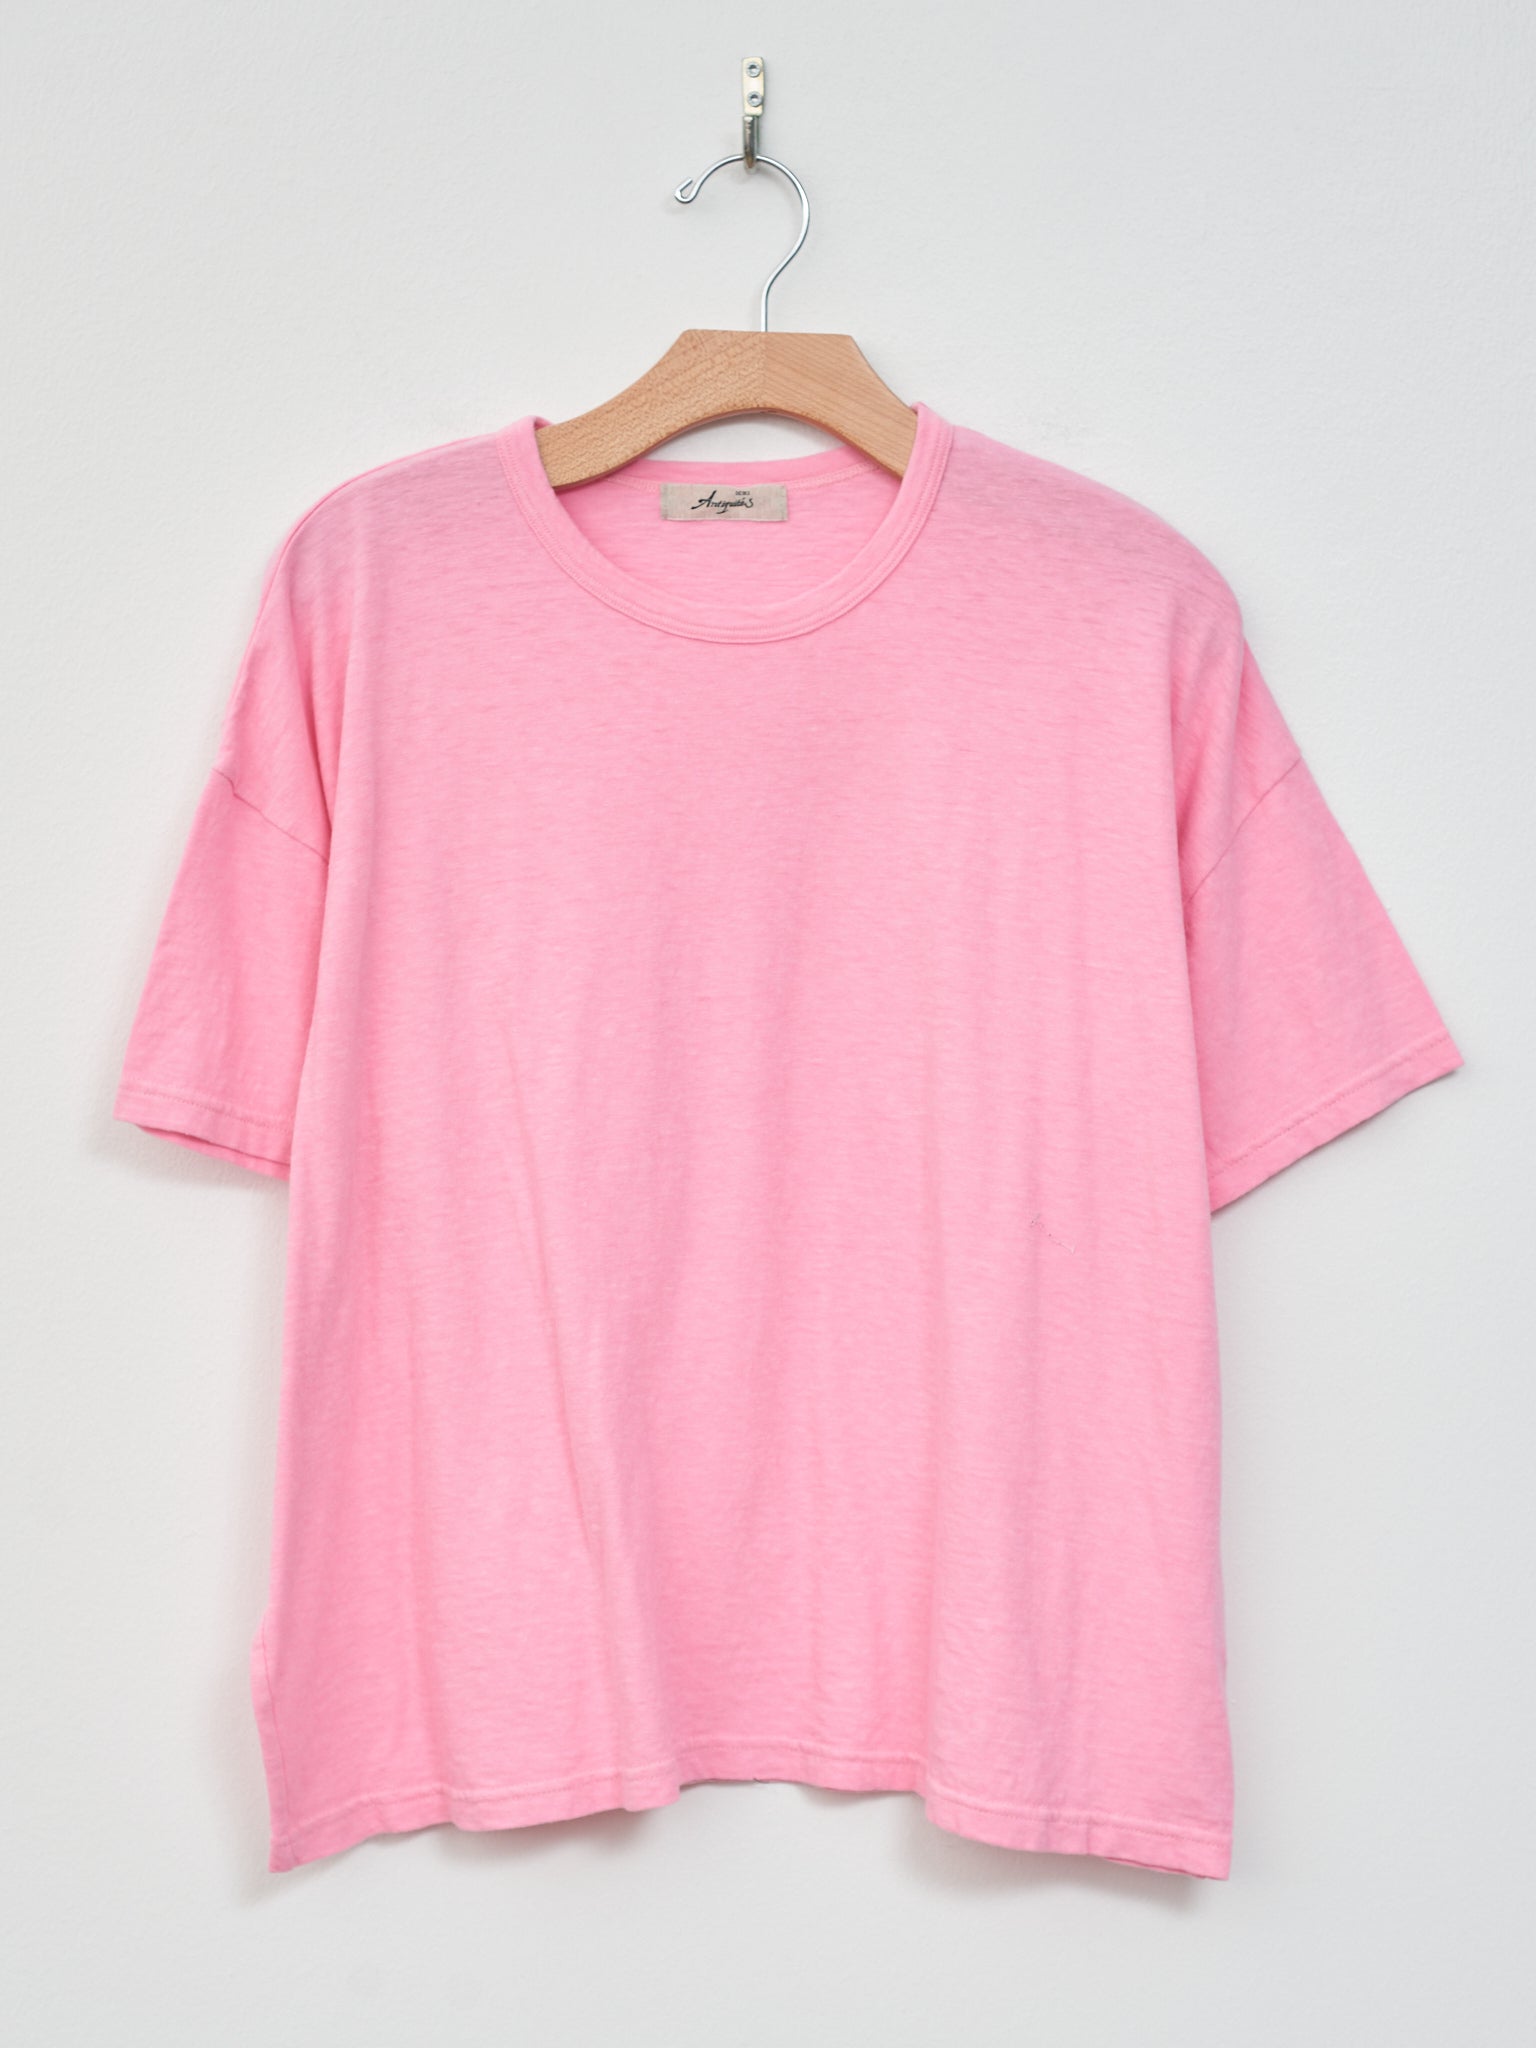 Namu Shop - Ichi T-Shirt - Pink